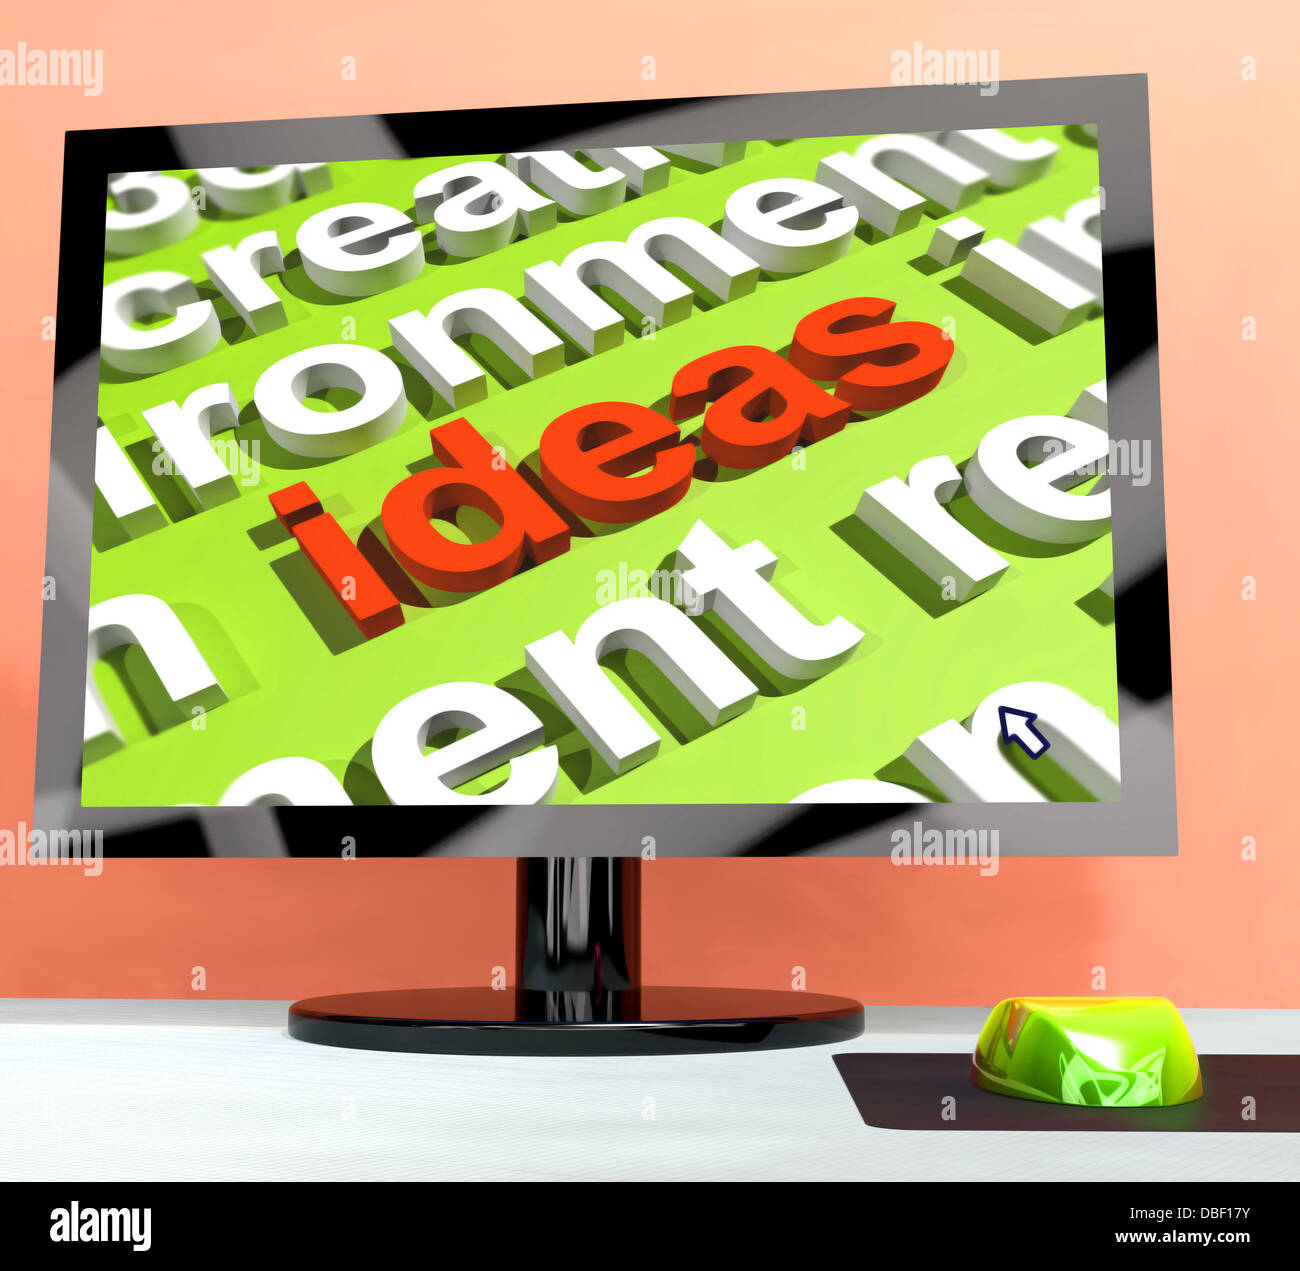 Les idées essentiels sur l'écran de l'ordinateur montrant la créativité Banque D'Images